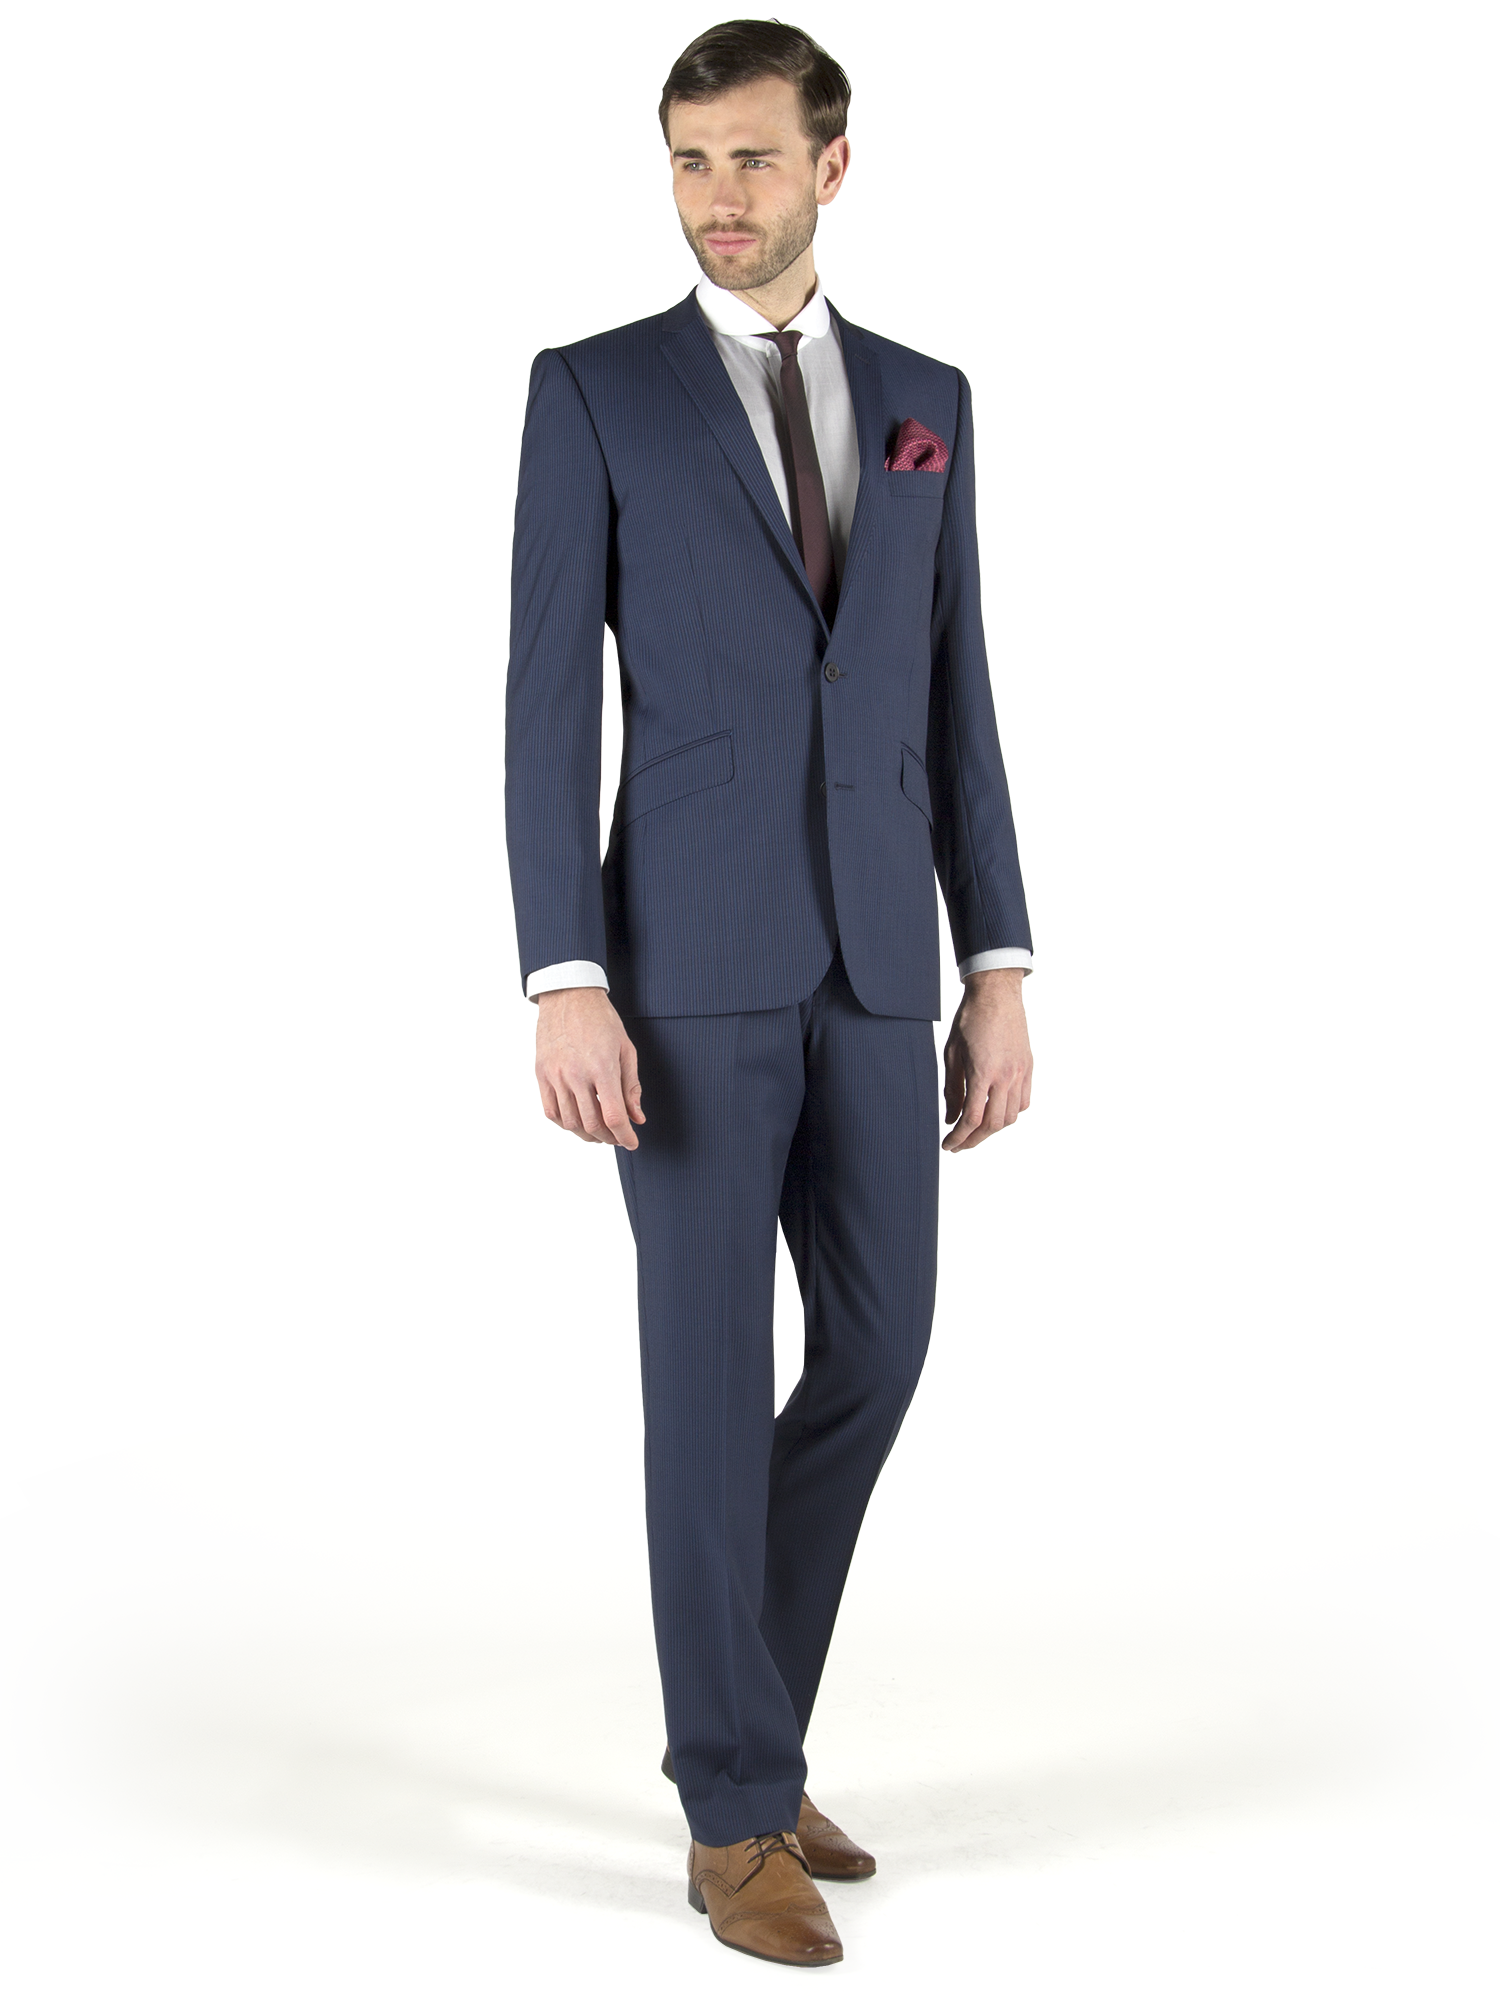 Suit Png Image - Suit, Transparent background PNG HD thumbnail